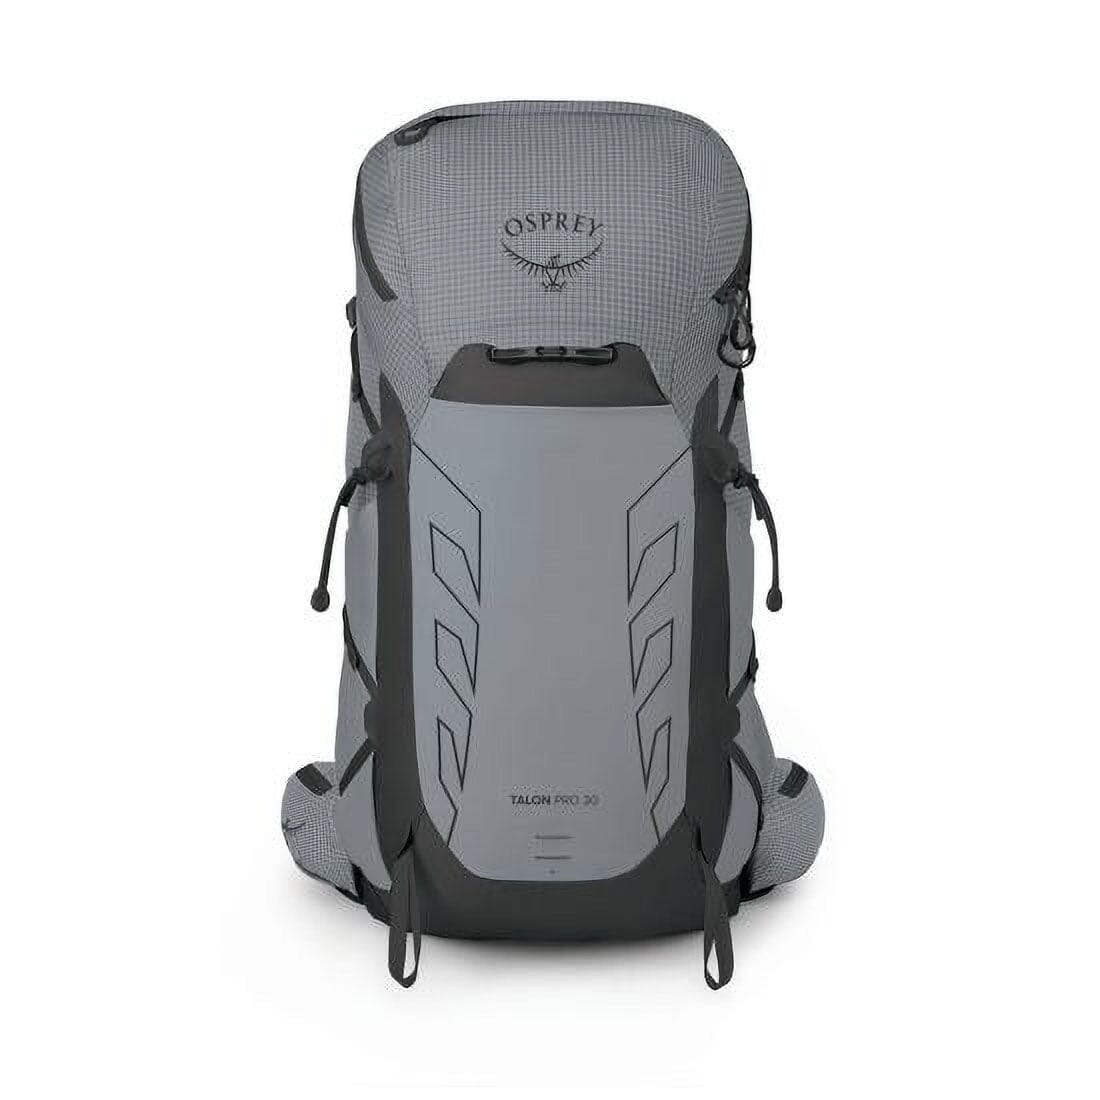 Osprey Talon Pro 30 Men's Day Hiking Backpack 